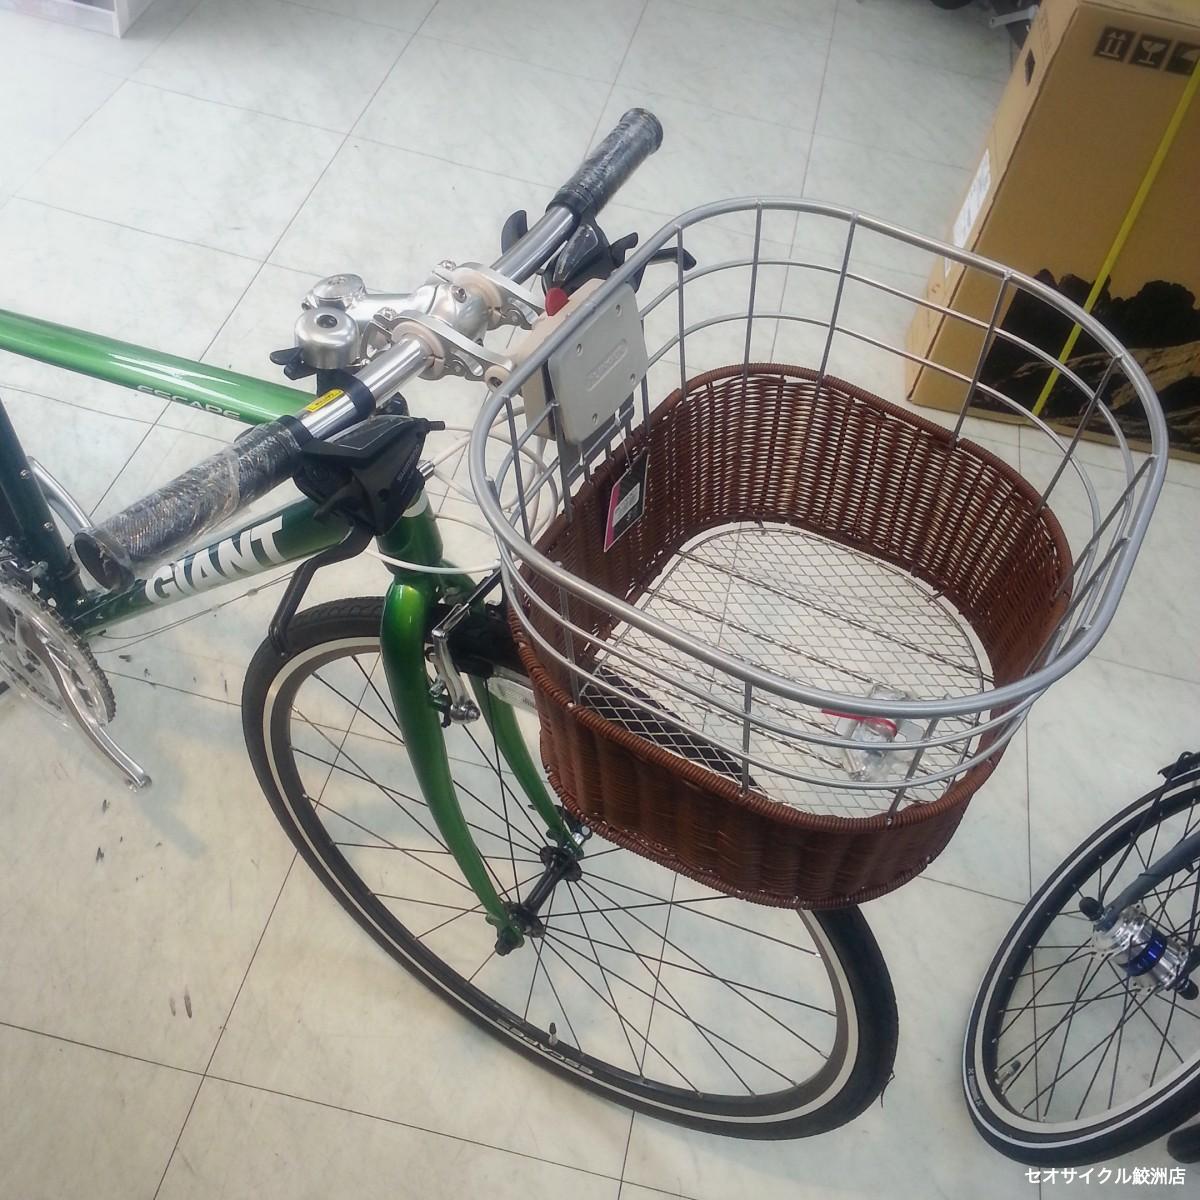 GIZA PRODUCTS(ギザプロダクツ) Alloy Basket アルミバスケット サイクル 自転車 ブラック BKT13700